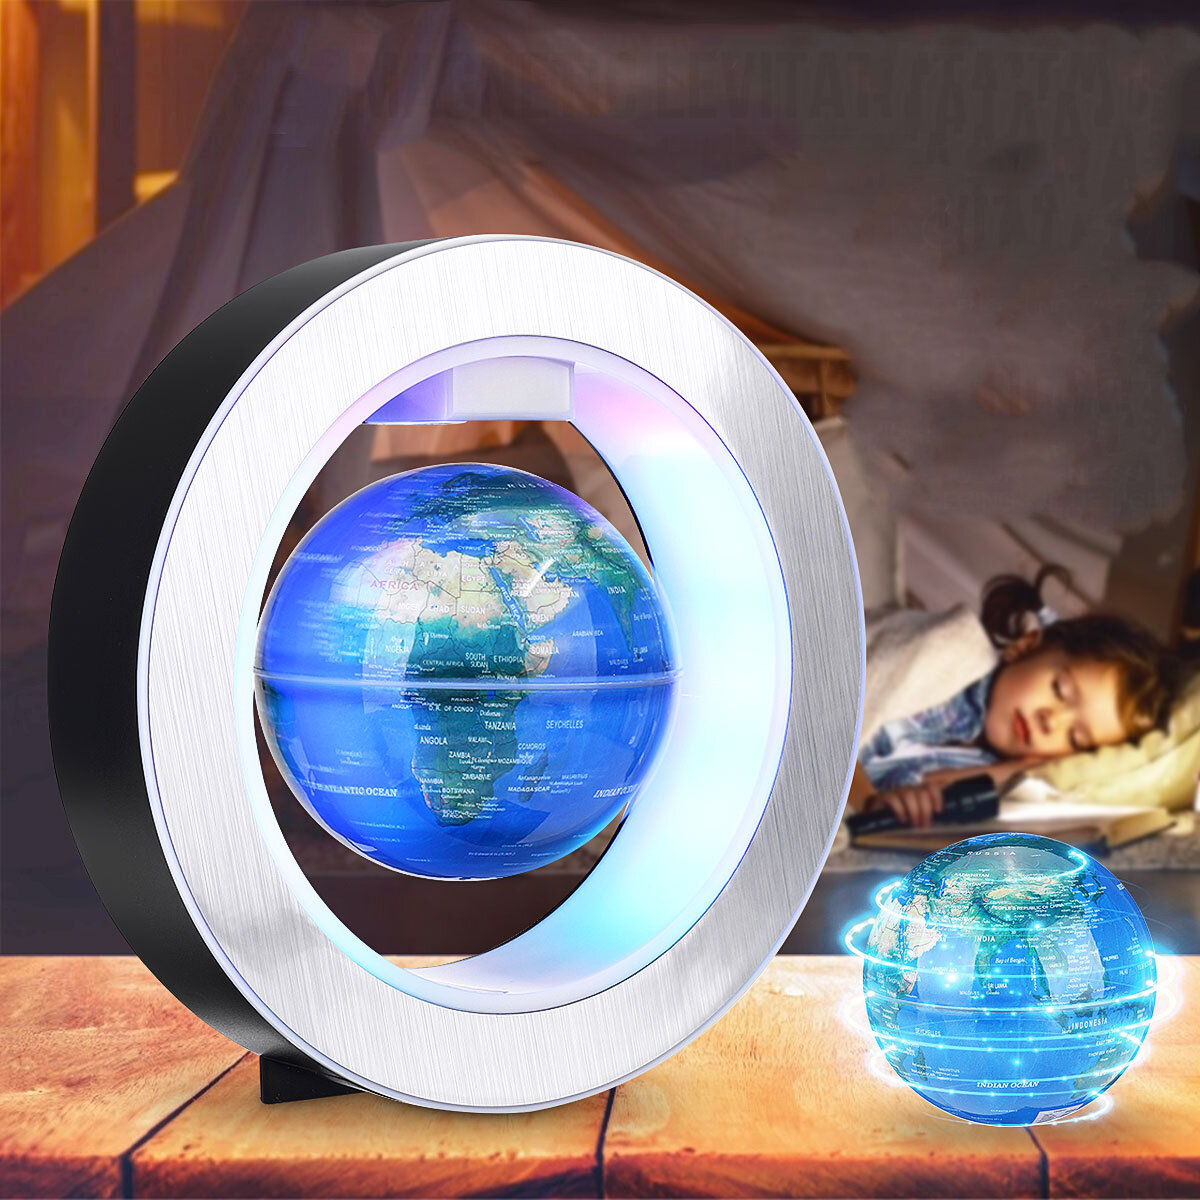 

Electronic Floating Magnetic Levitation Floating Globe World Map With LED Light